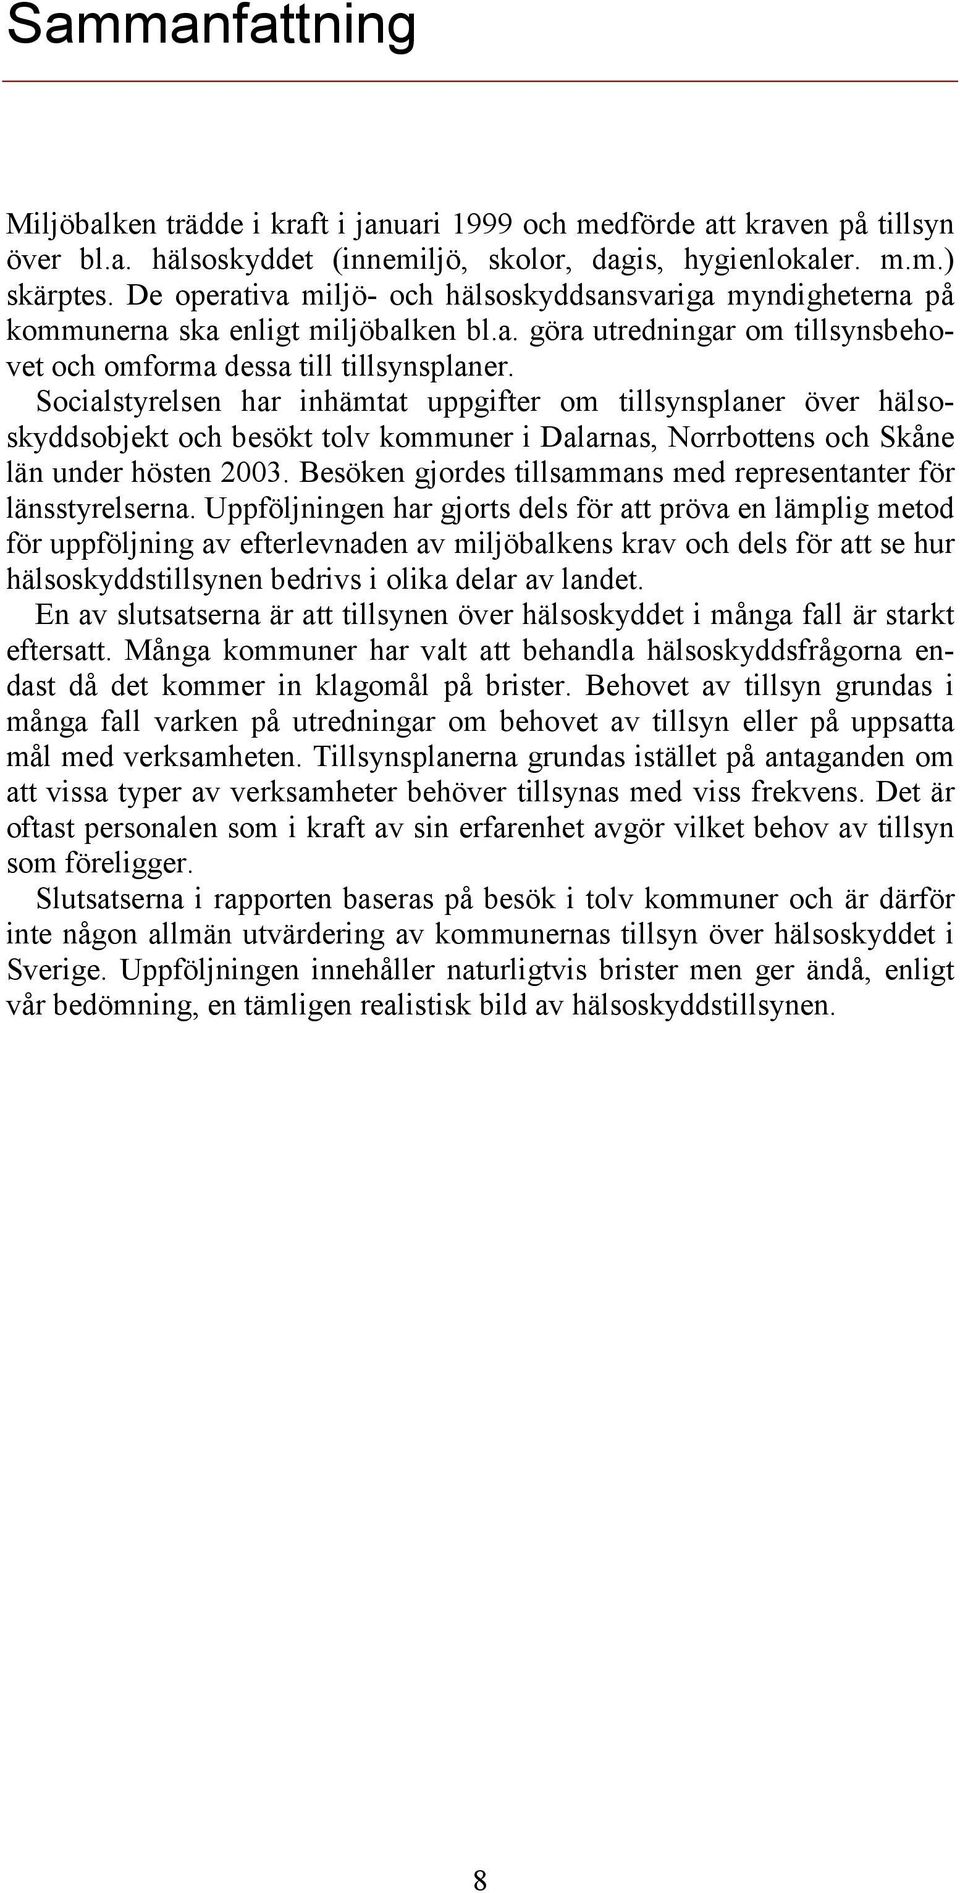 Socialstyrelsen har inhämtat uppgifter om tillsynsplaner över hälsoskyddsobjekt och besökt tolv kommuner i Dalarnas, Norrbottens och Skåne län under hösten 2003.